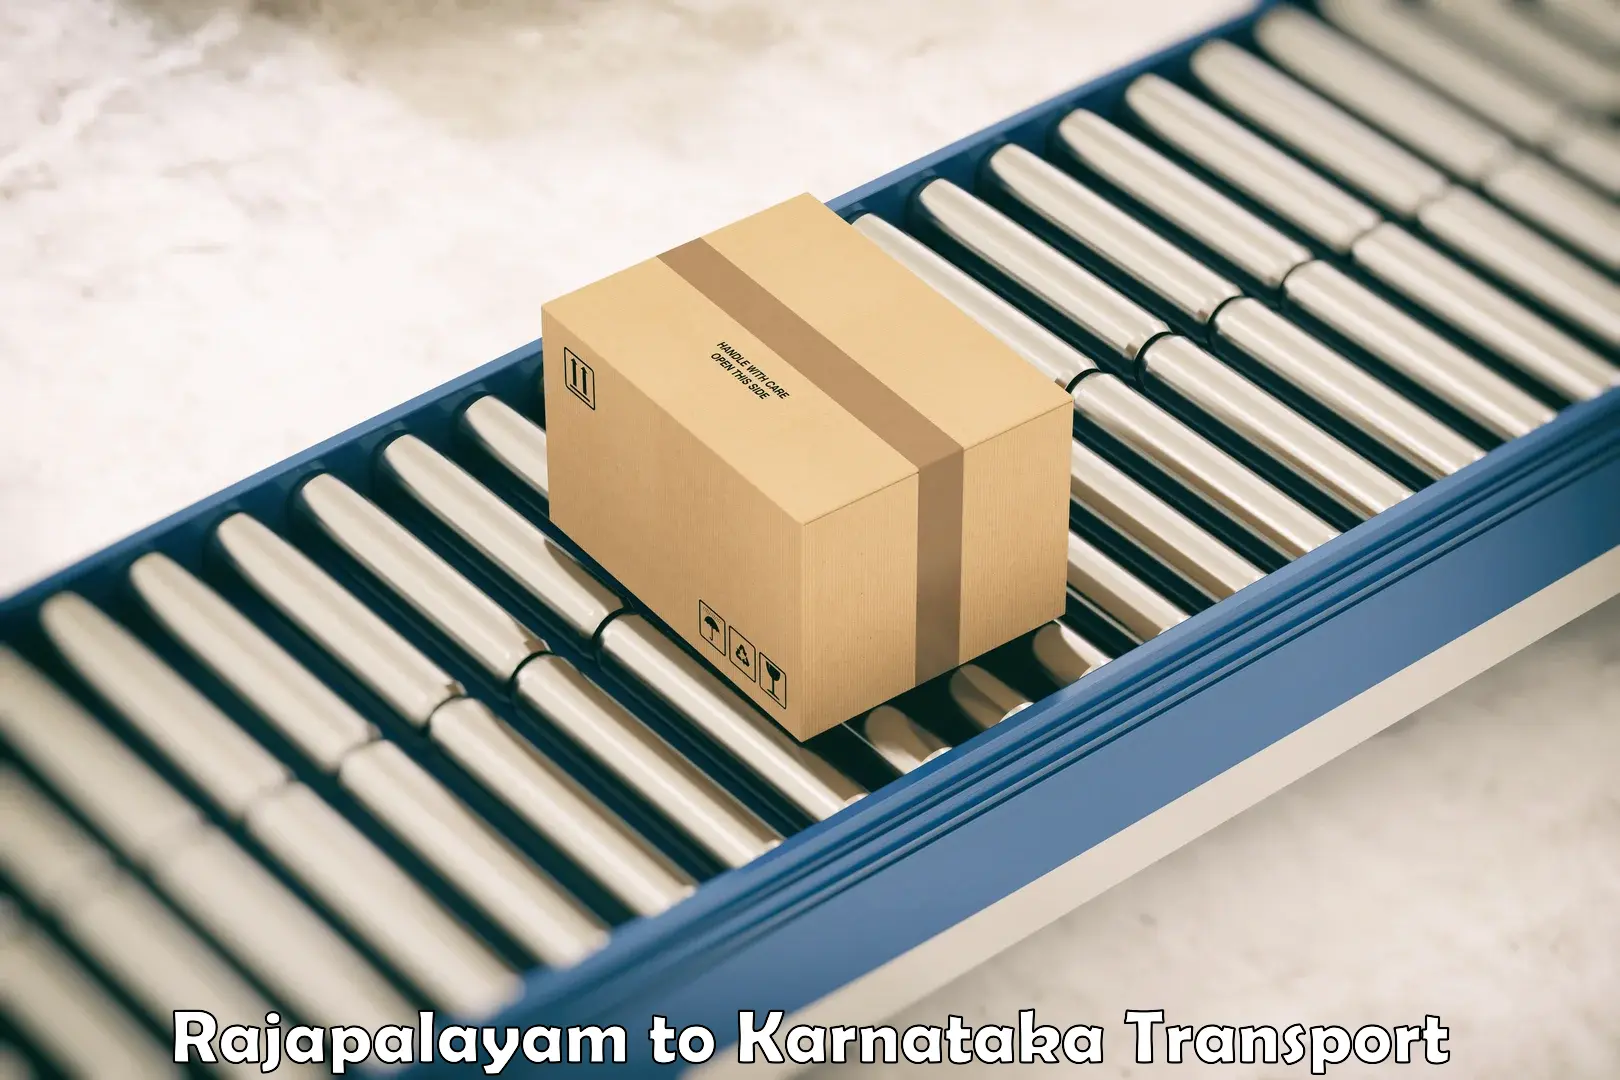 Land transport services Rajapalayam to Karnataka